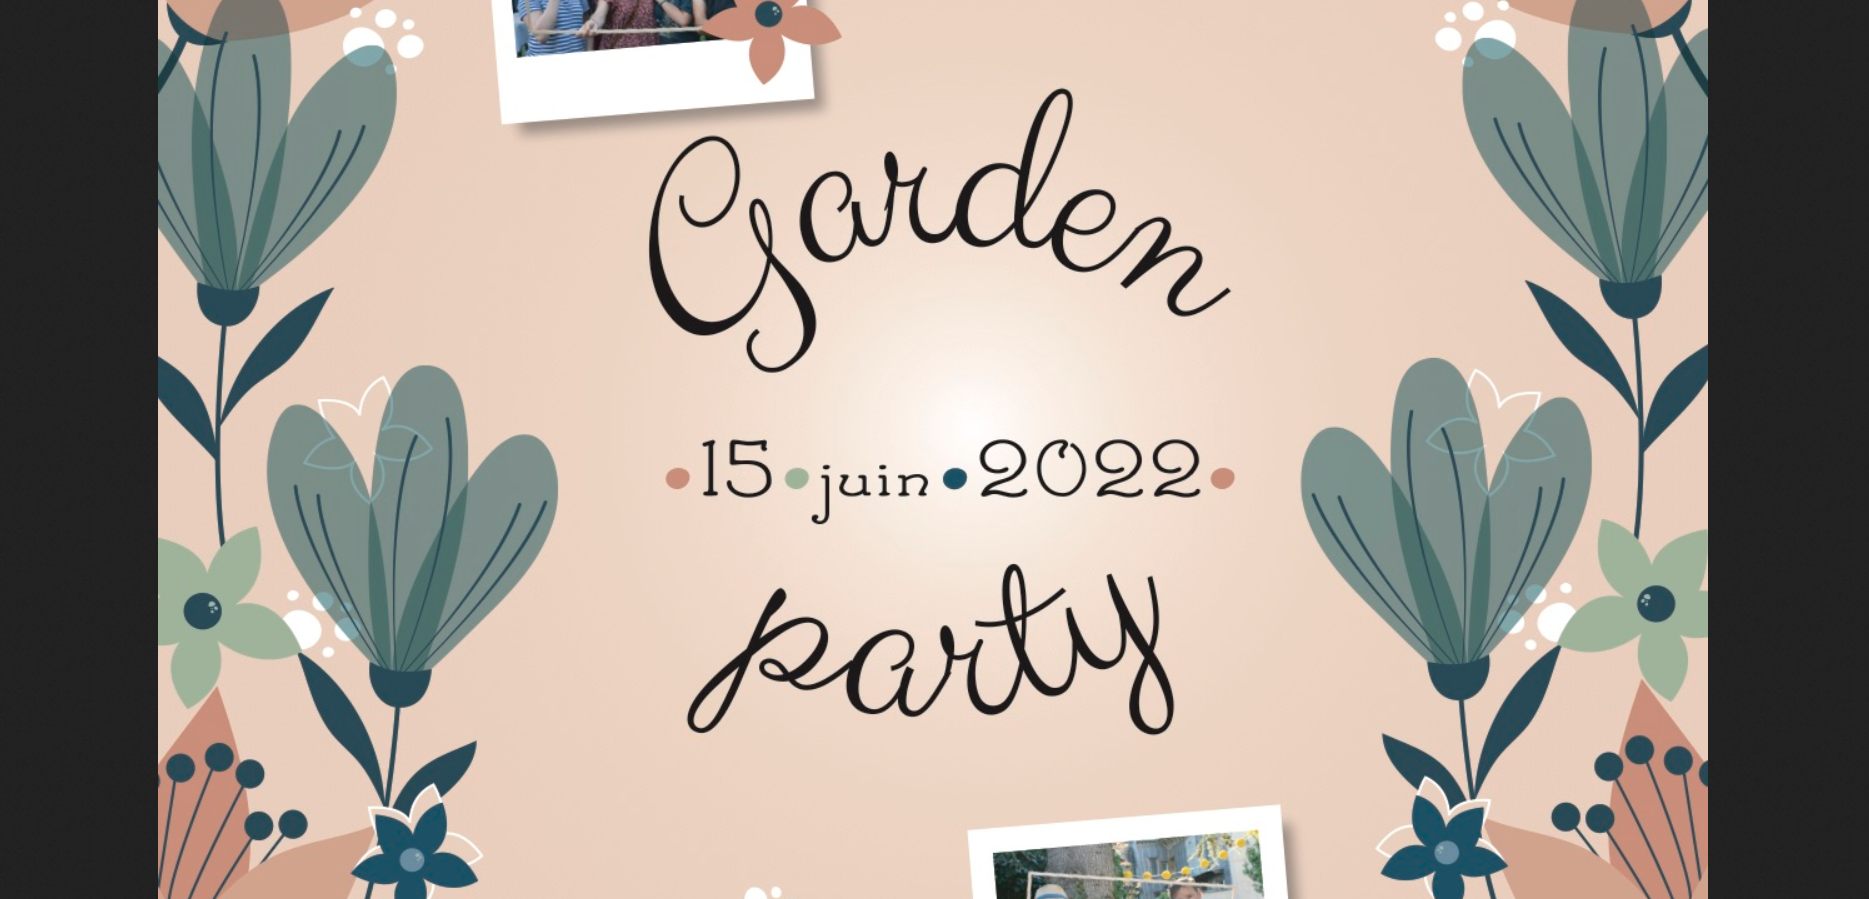 Garden party paroissiale